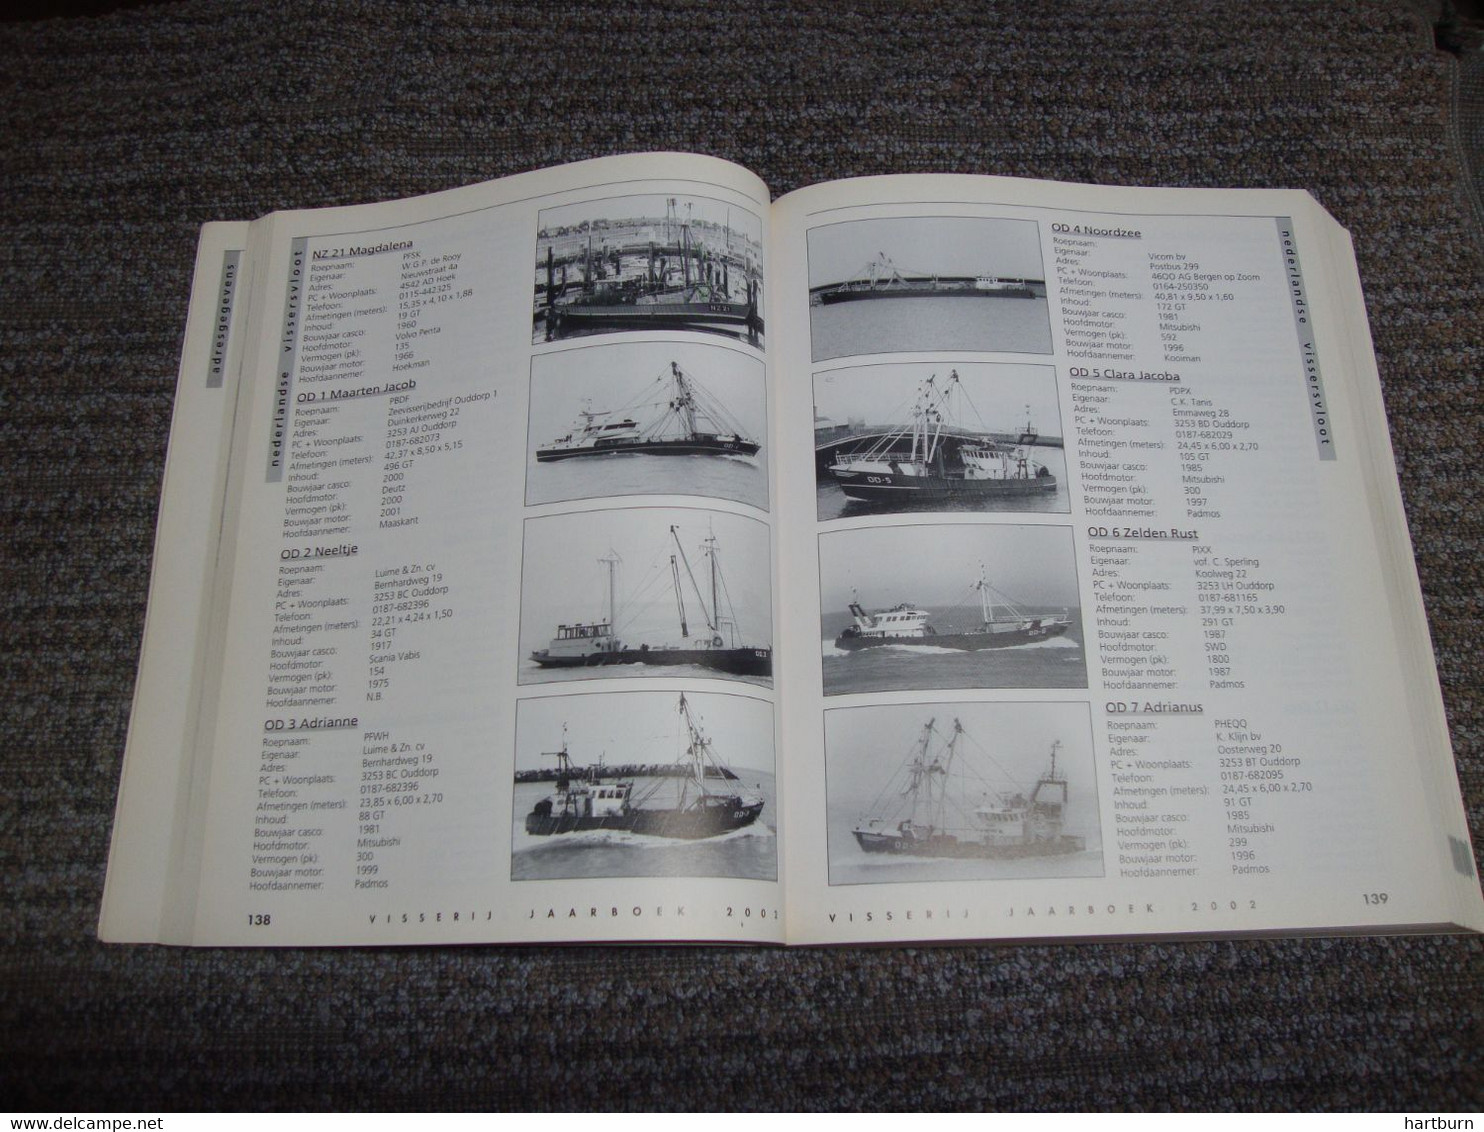 Visserij Jaarboek 2002 (Bak - Gar) Visserij, Vissersboot, Pêche En Mer - Pratique